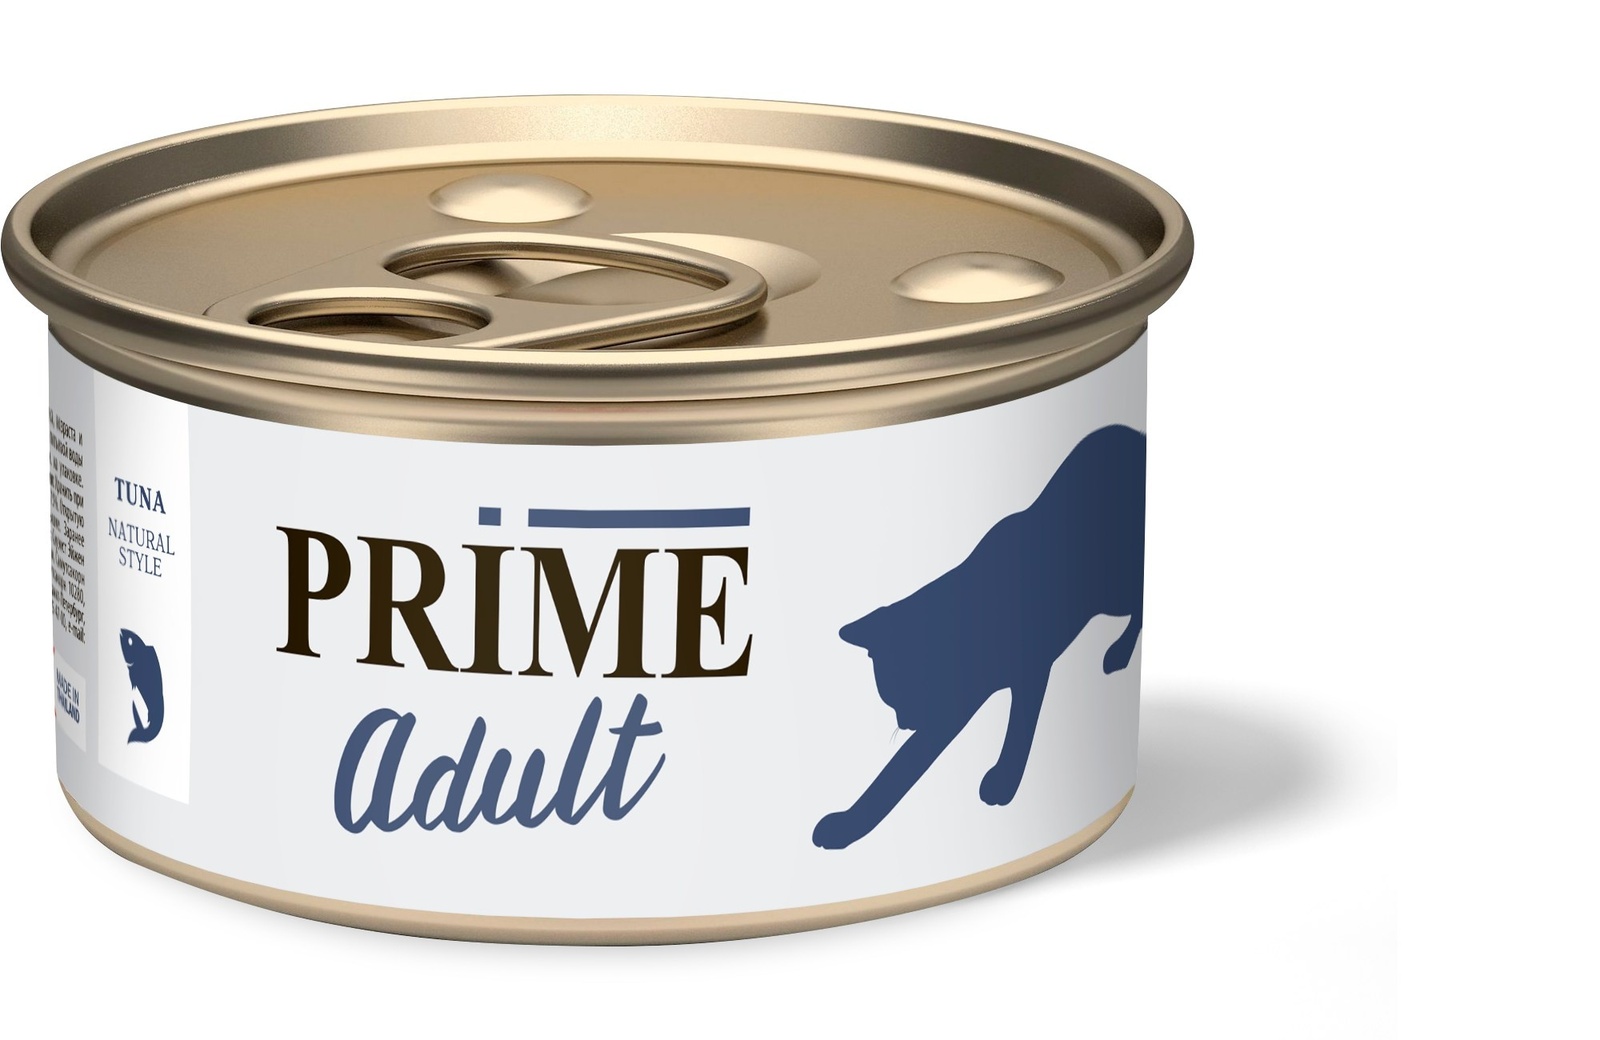 Prime консервы для кошек тунец в собственном соку (70 г) Prime консервы для кошек тунец в собственном соку (70 г) - фото 1